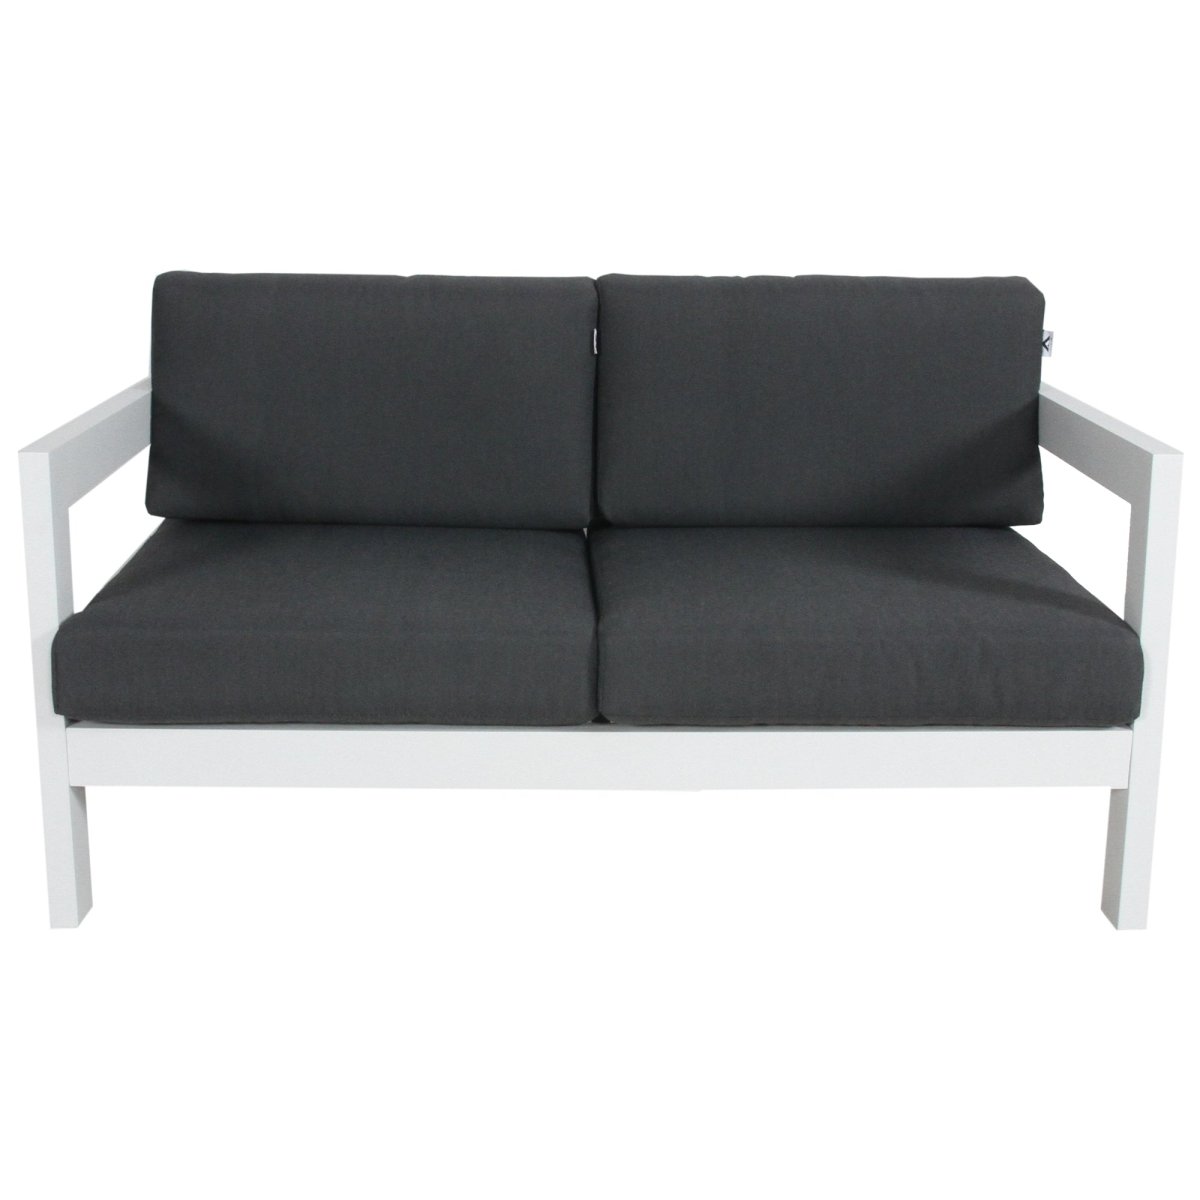 Outie 3pc Set 1+2+3 Seater Outdoor Sofa Lounge Aluminium Frame White - Outdoorium